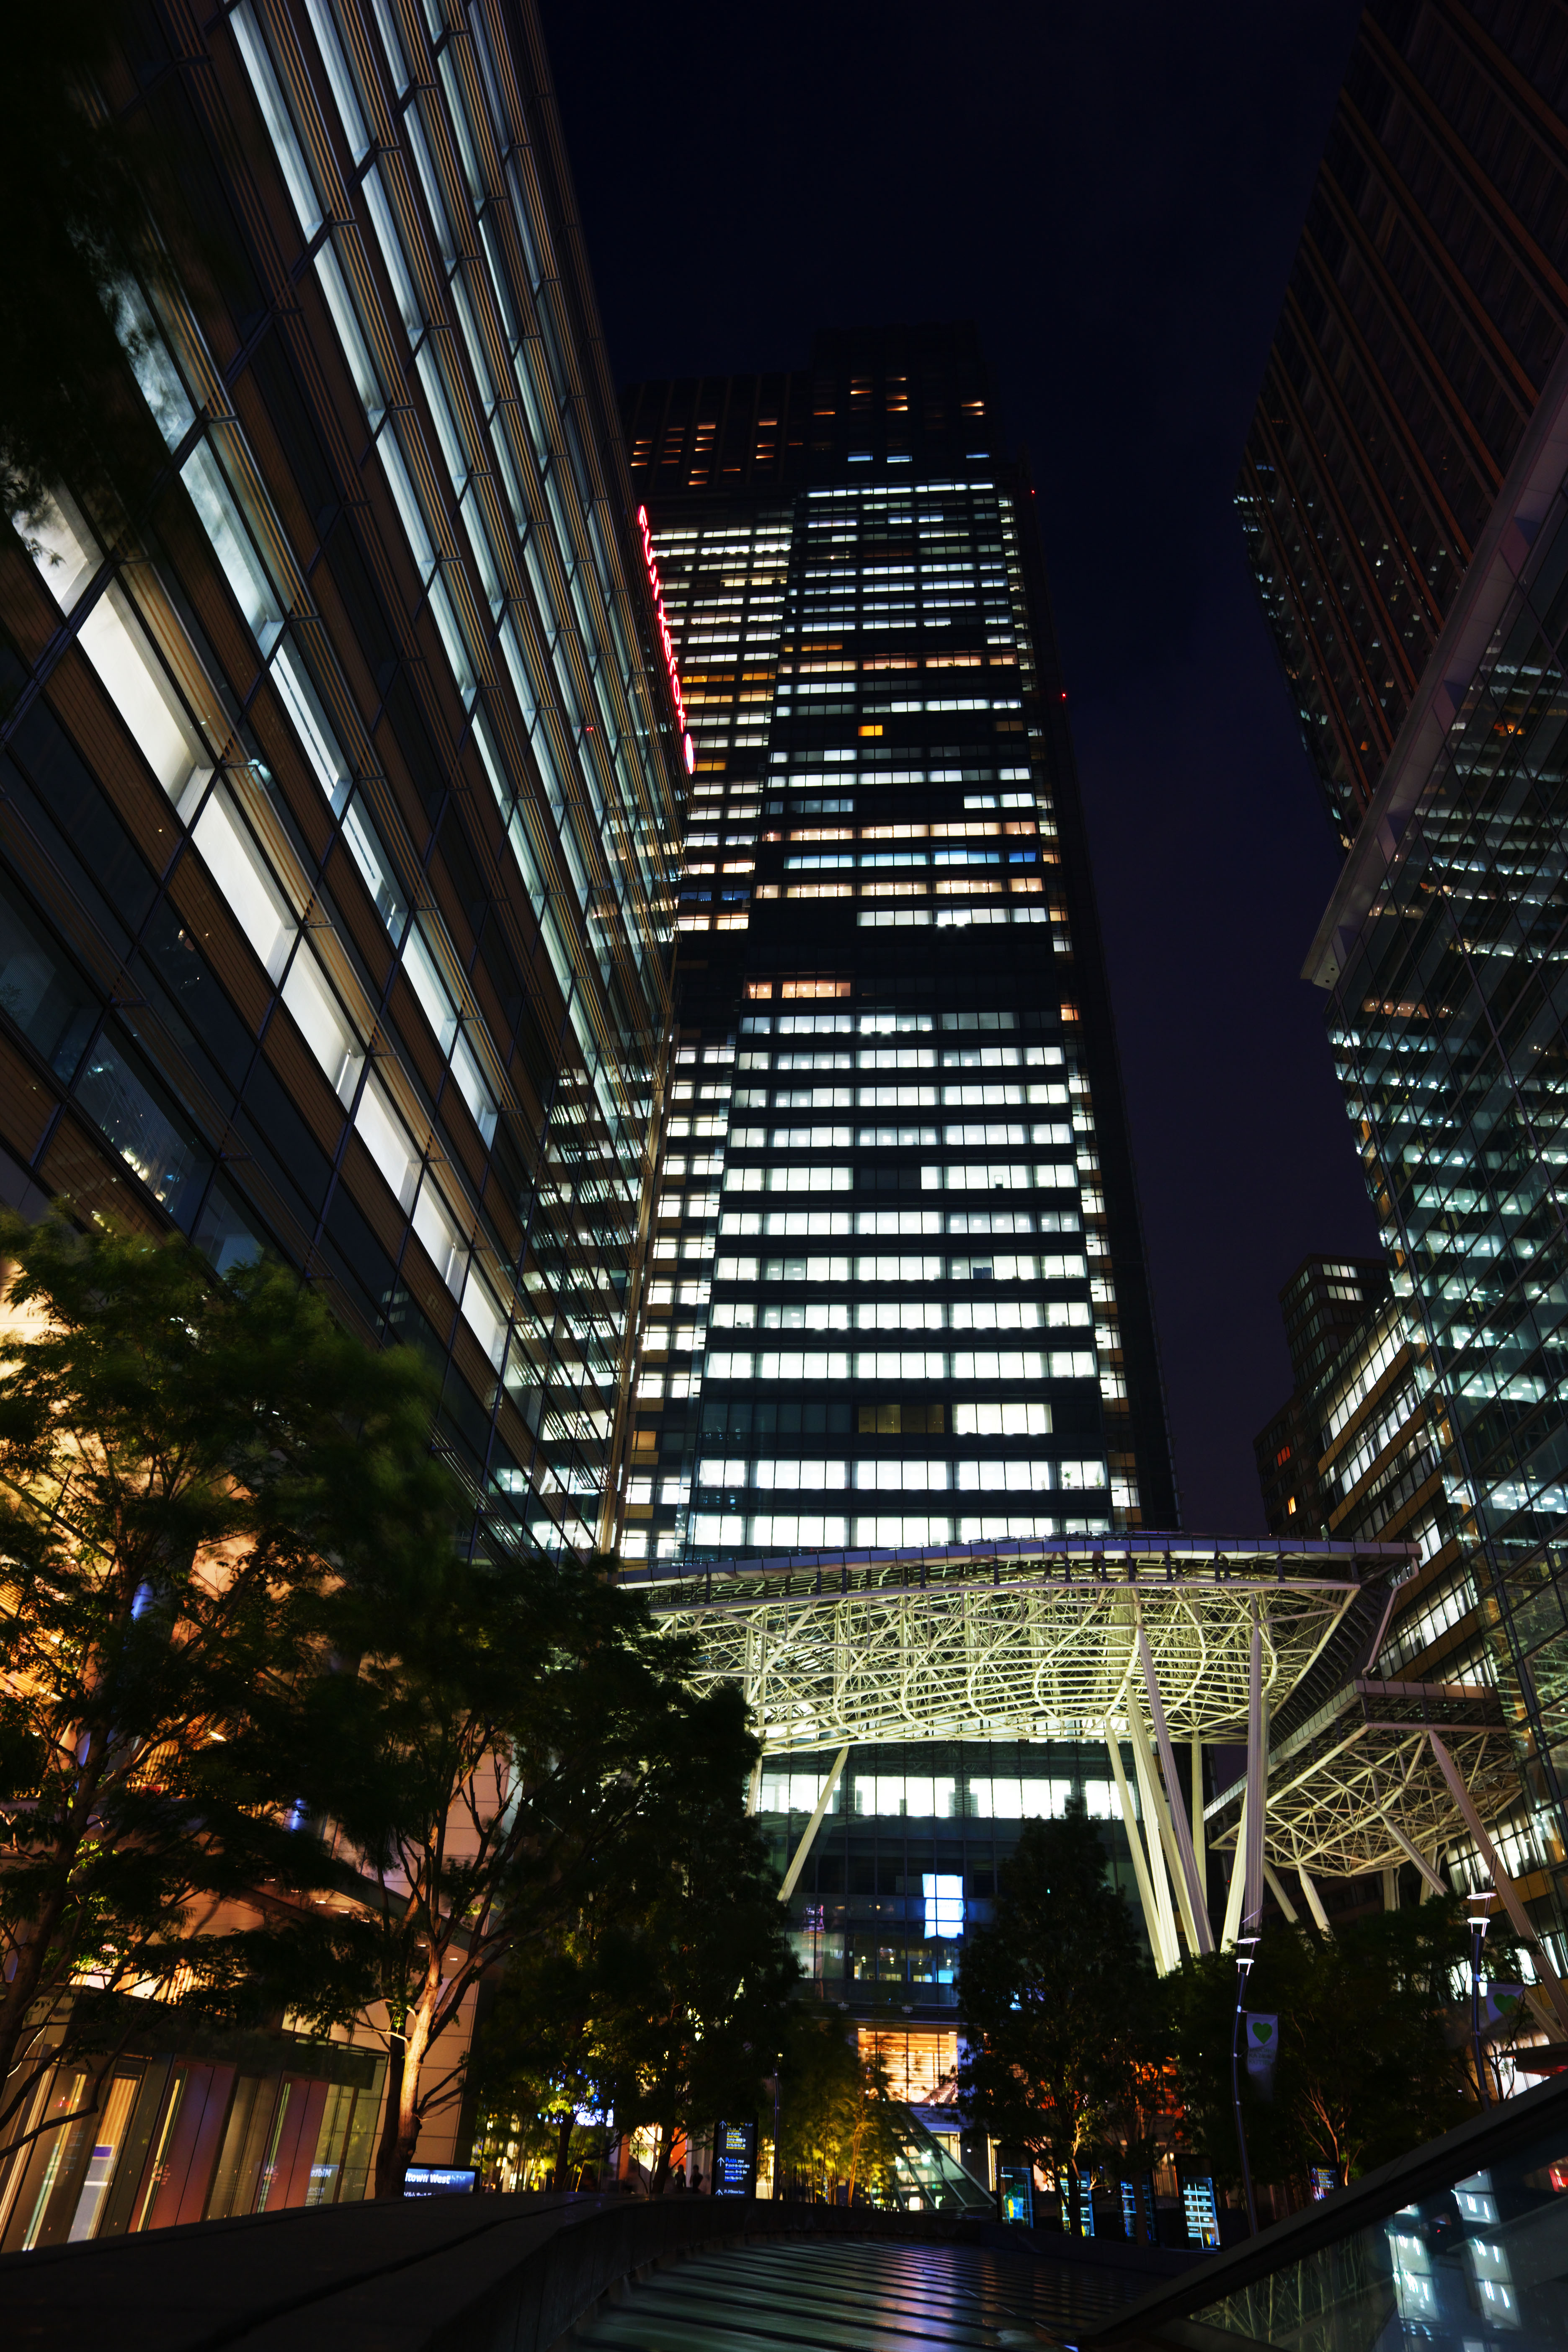 fotografia, material, livra, ajardine, imagine, proveja fotografia,A noite do midtown de Tquio, O centro da cidade, edifcio de edifcio alto, Copo, Um edifcio comercial